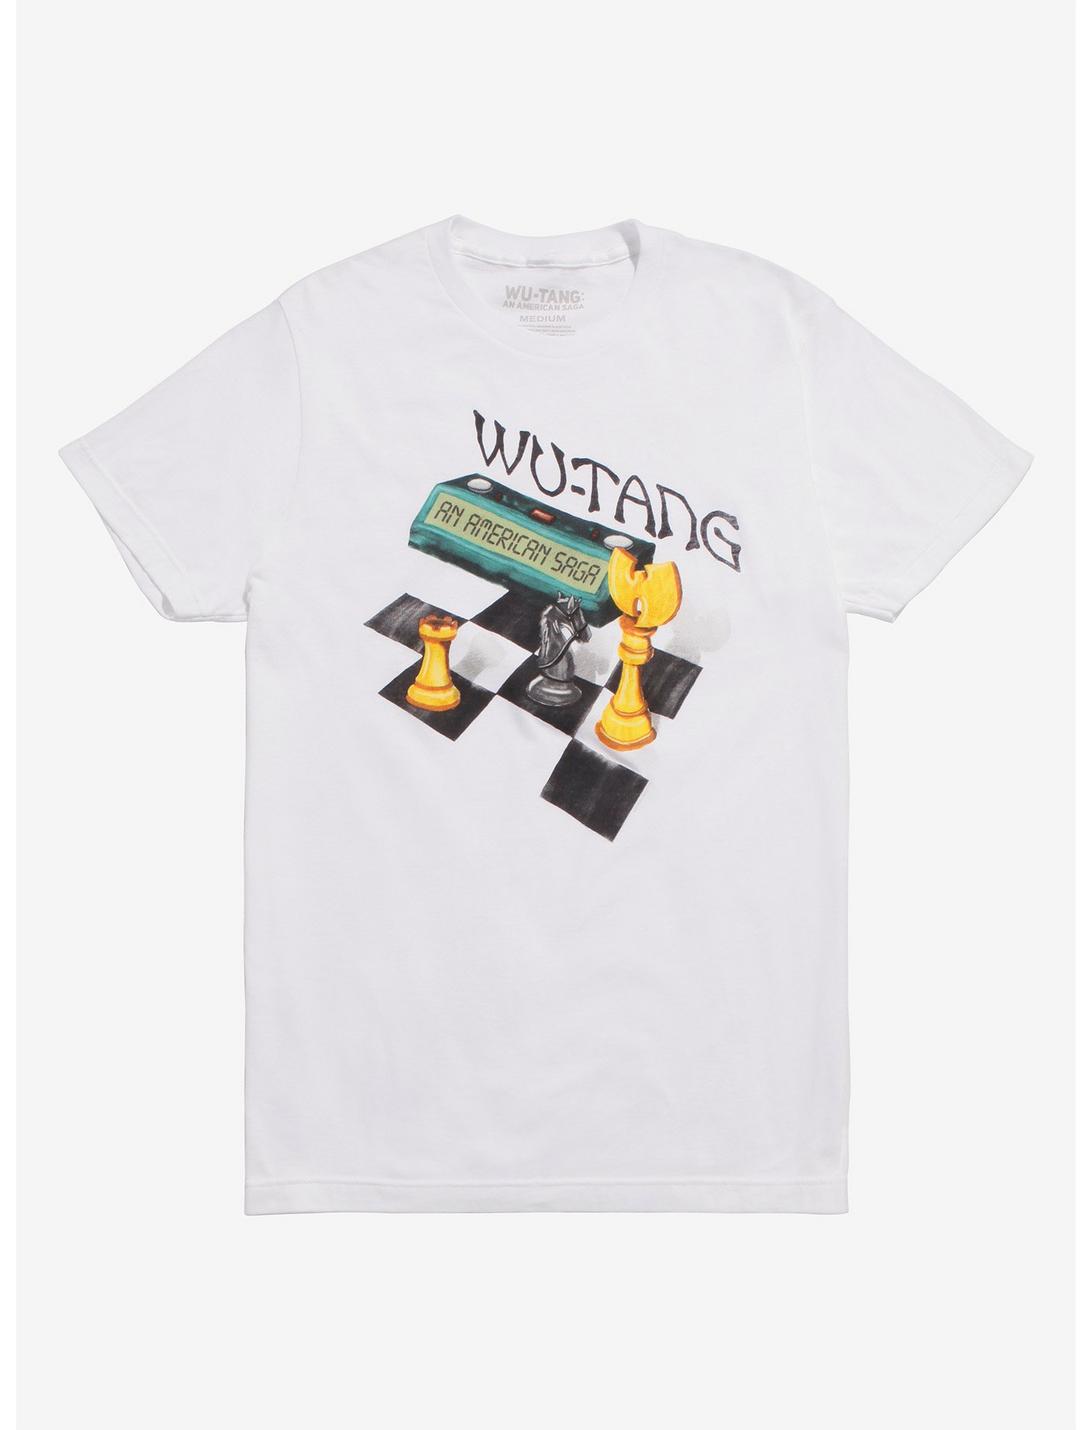 Wu-Tang Clan American Saga Chess T-Shirt, WHITE, hi-res